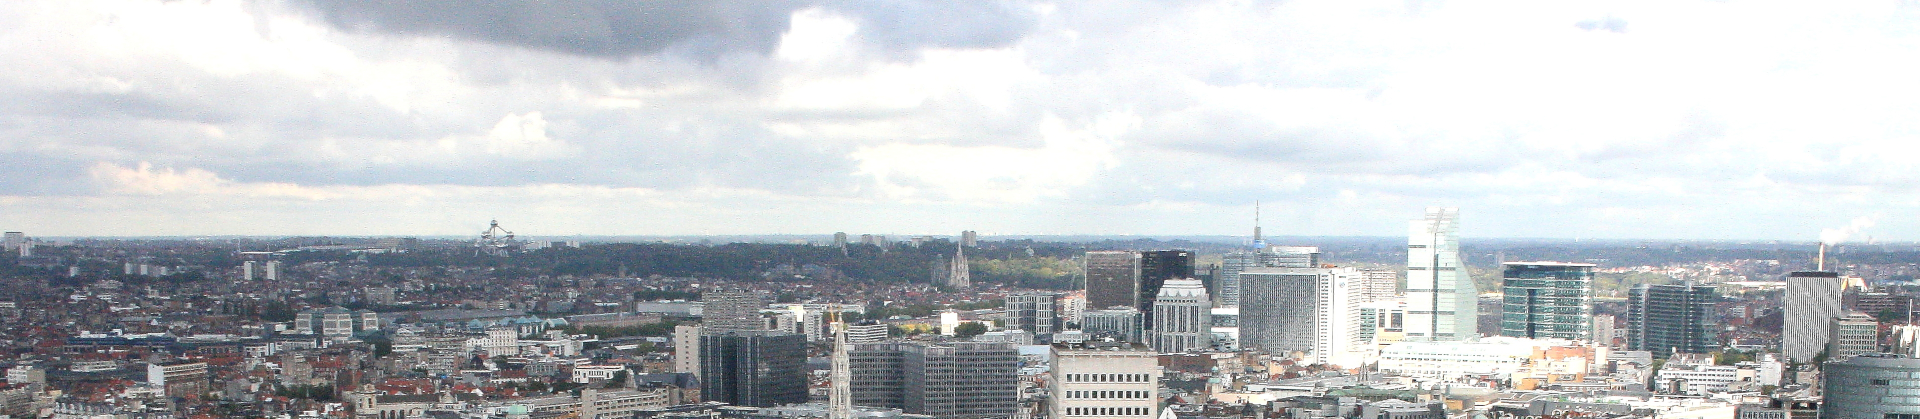 Brussels_skyline_1003_wikimedia.JPG